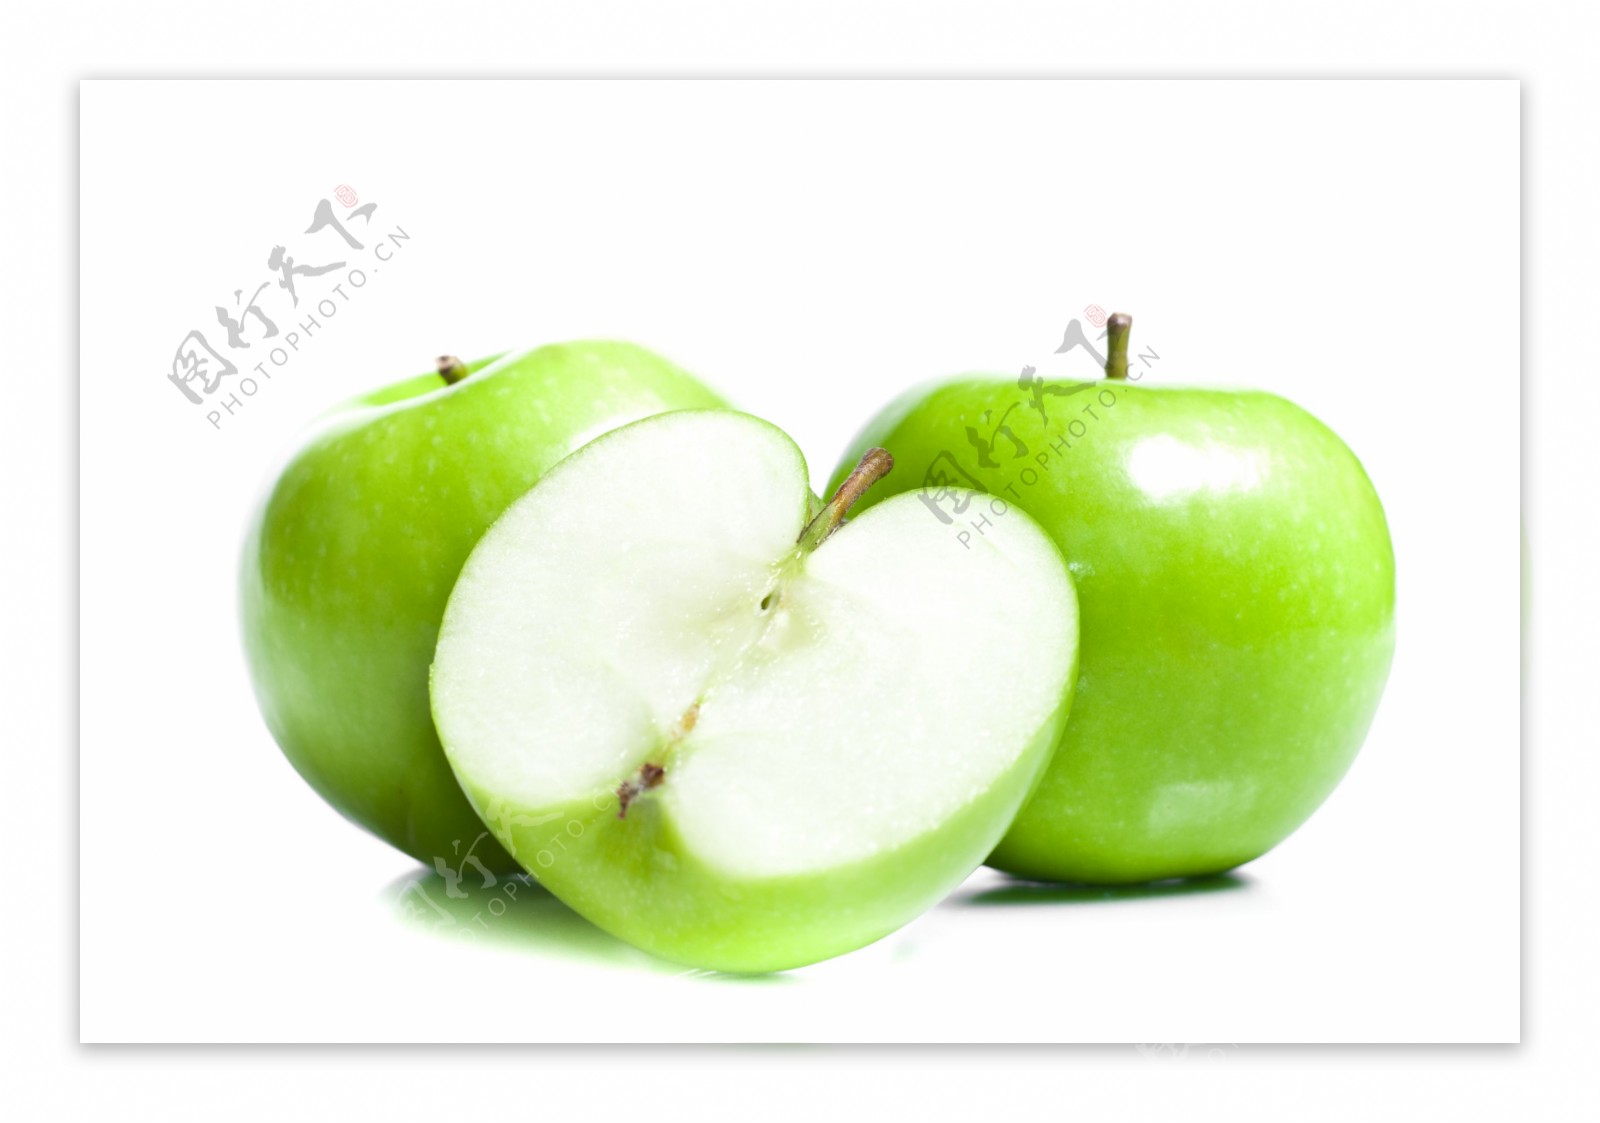 两个半绿色苹果特写图片